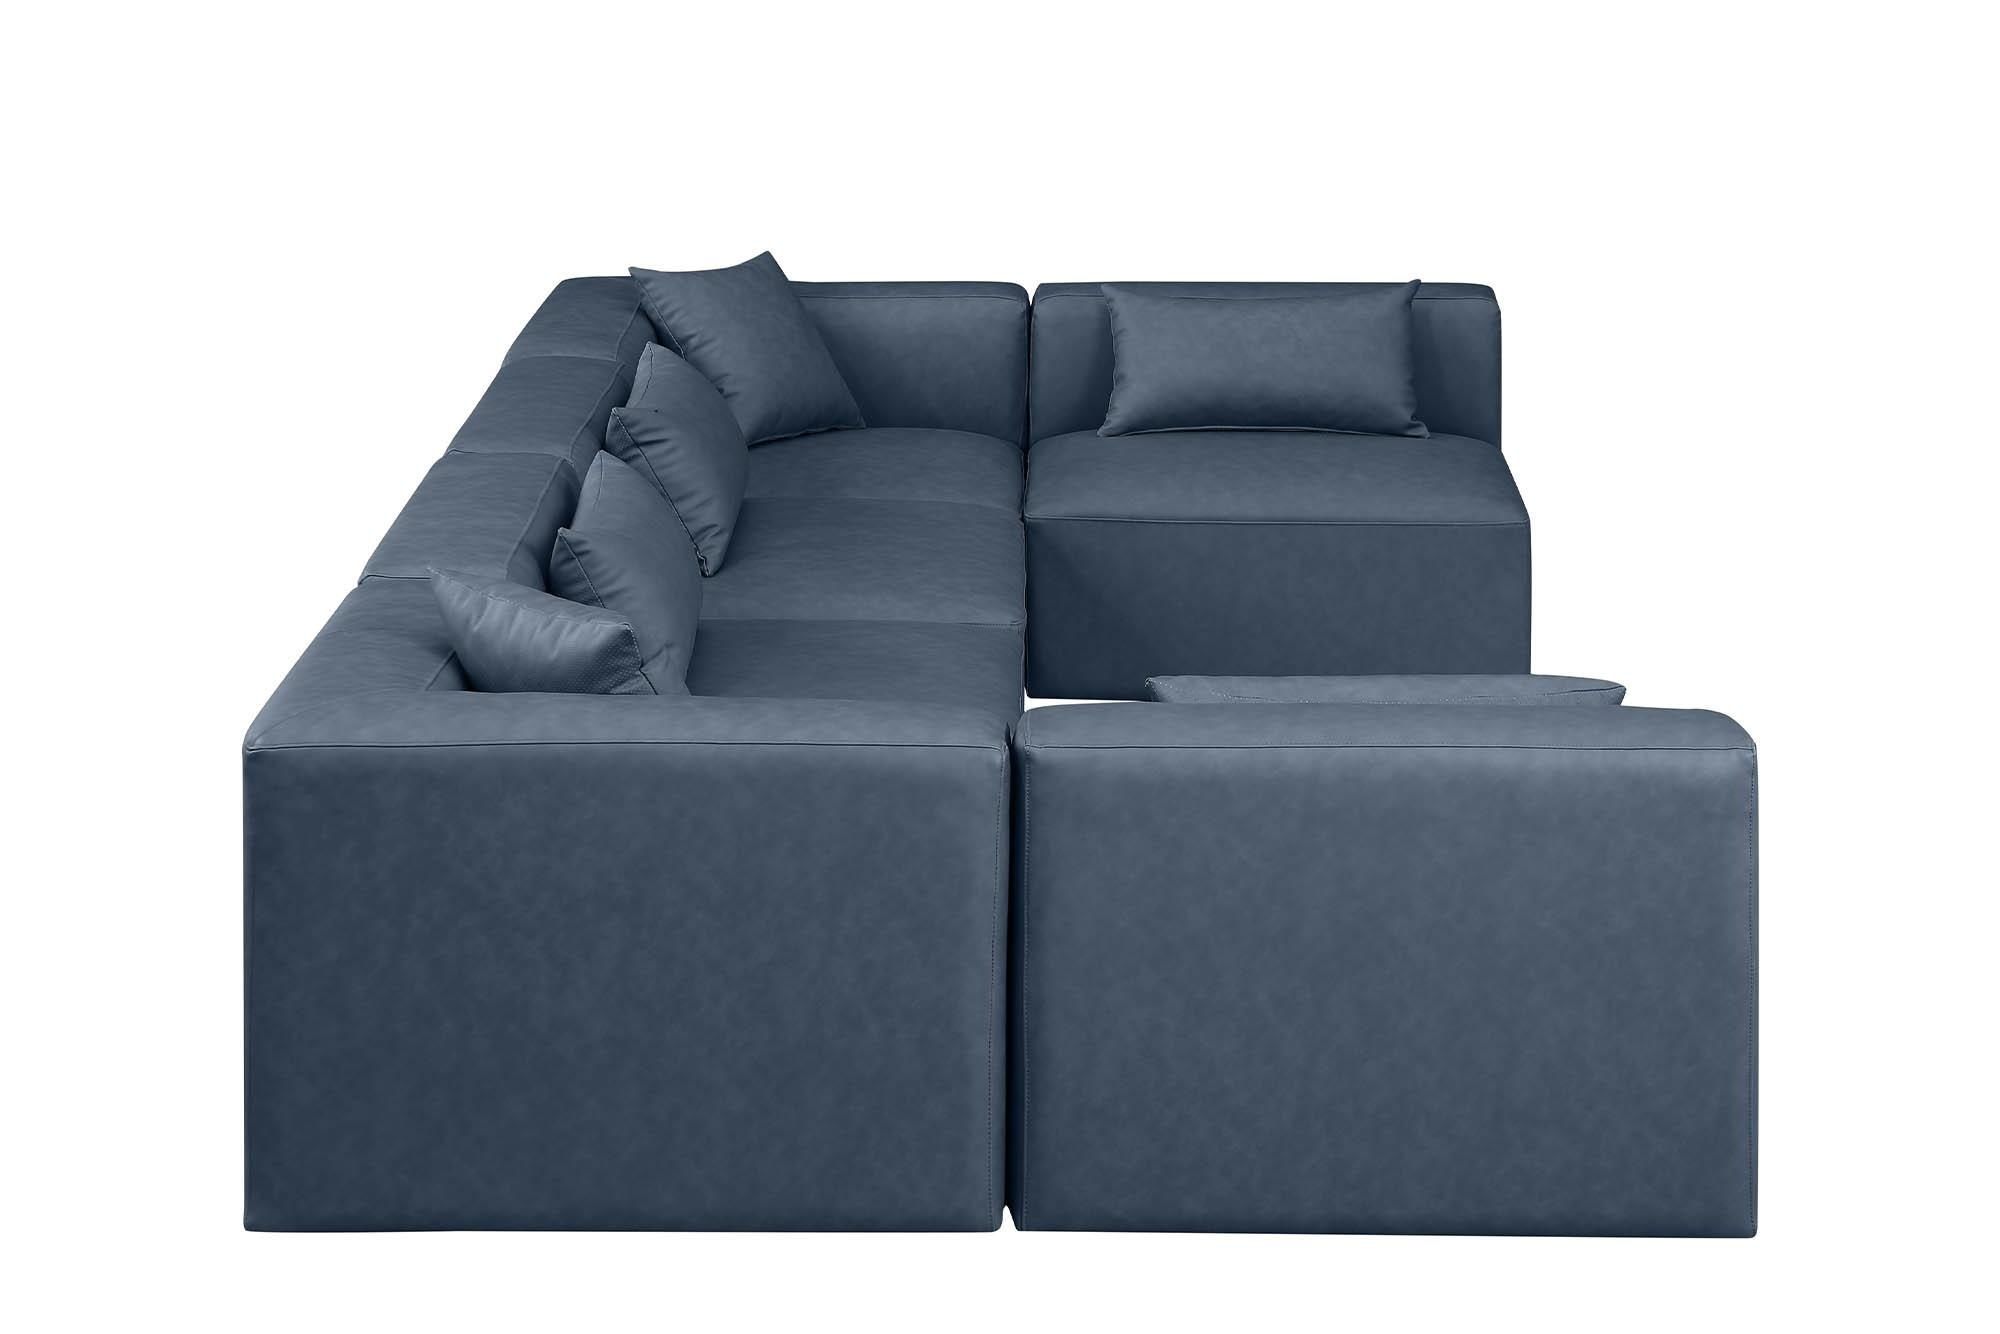 

    
Meridian Furniture CUBE 668Navy-Sec6D Modular Sectional Sofa Navy 668Navy-Sec6D
